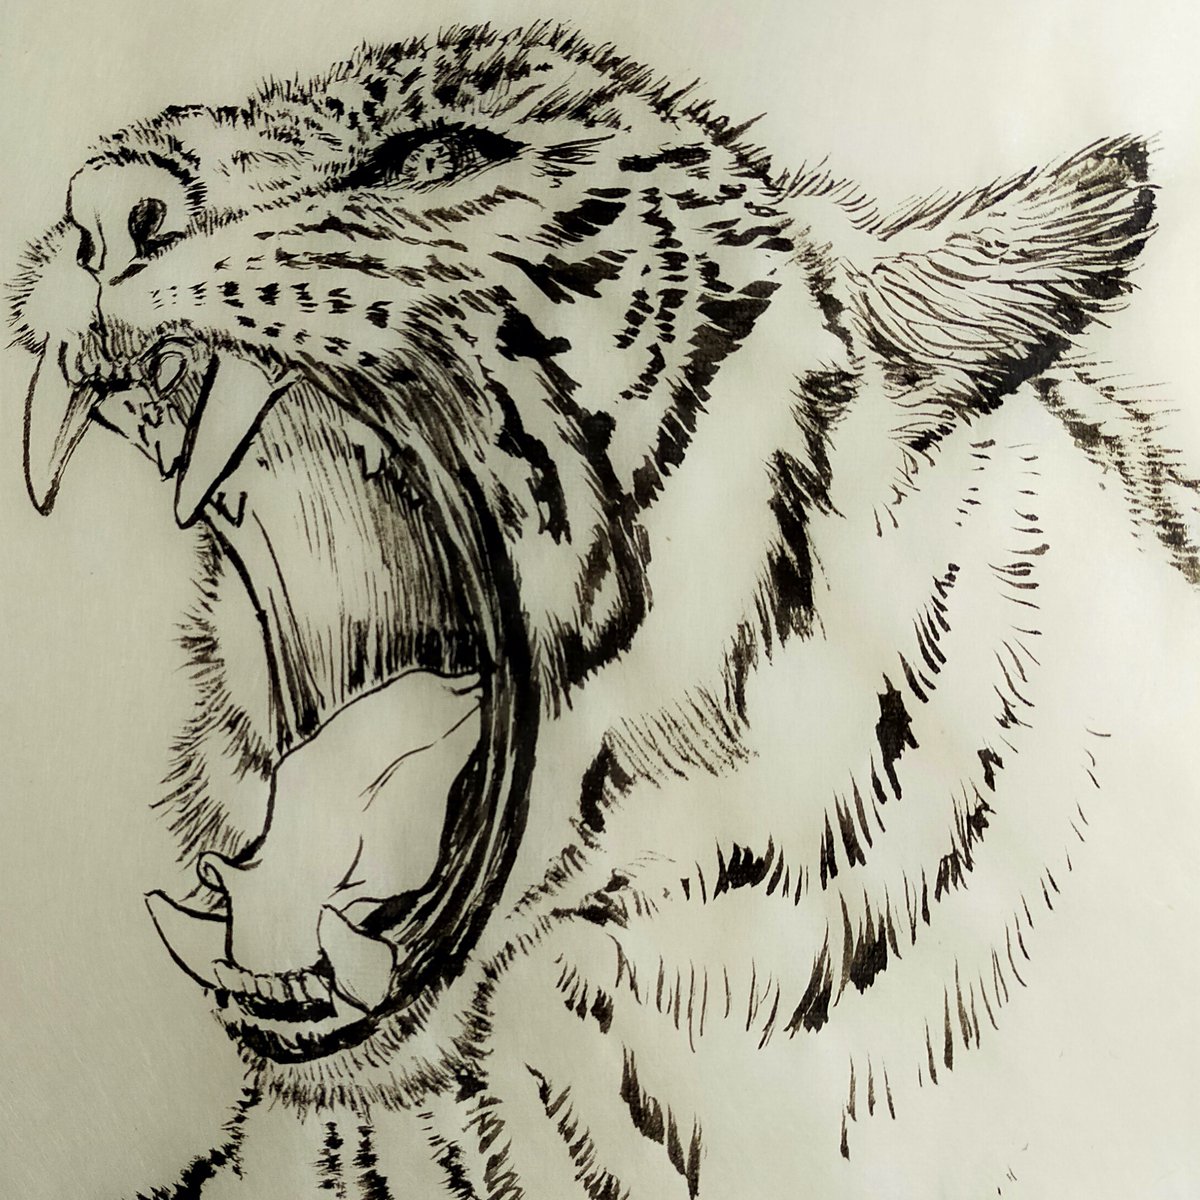 久々にいい筆、顔料インクで雁皮紙に描いてみました。2022年だから「にゃおーんにゃんにゃん」の猫絵にするかちょっと考えましたが…虎、描いてみたかったんだよね。 